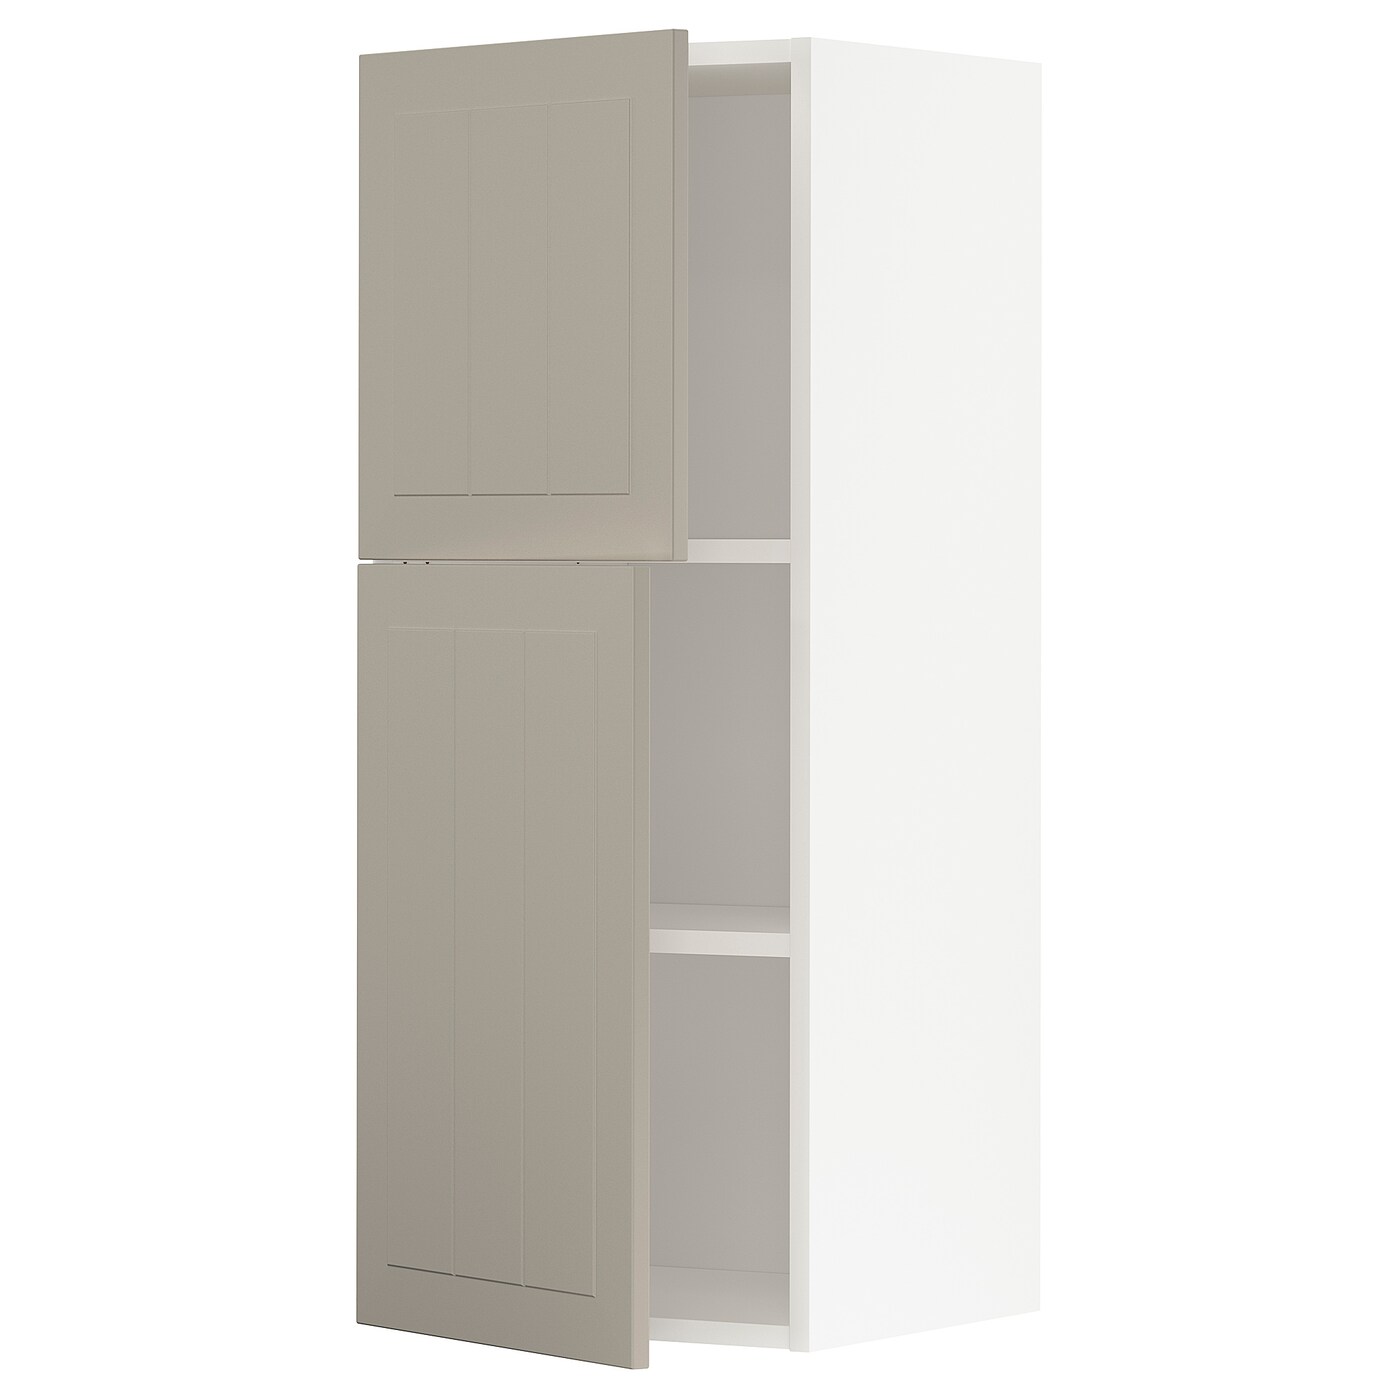 Навесной шкаф с полкой - METOD IKEA/ МЕТОД ИКЕА, 100х40 см, белый/бежевый